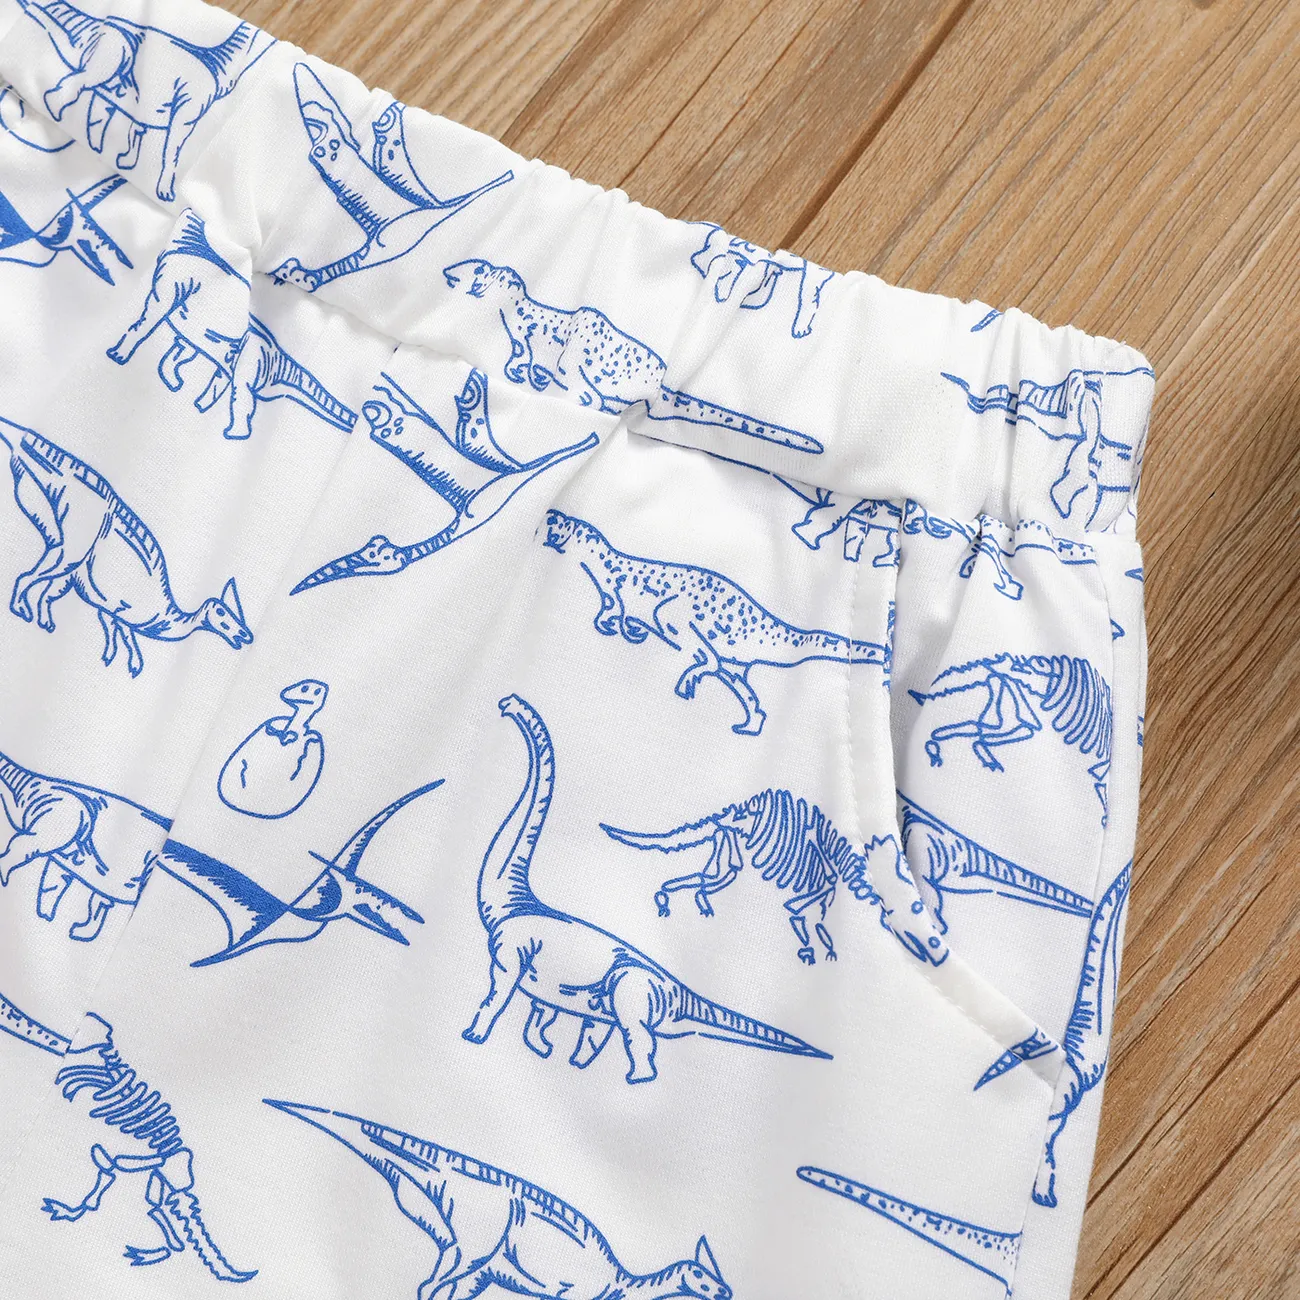 shorts elásticos con estampado de dinosaurios y parches bordados para niños Blanco big image 1